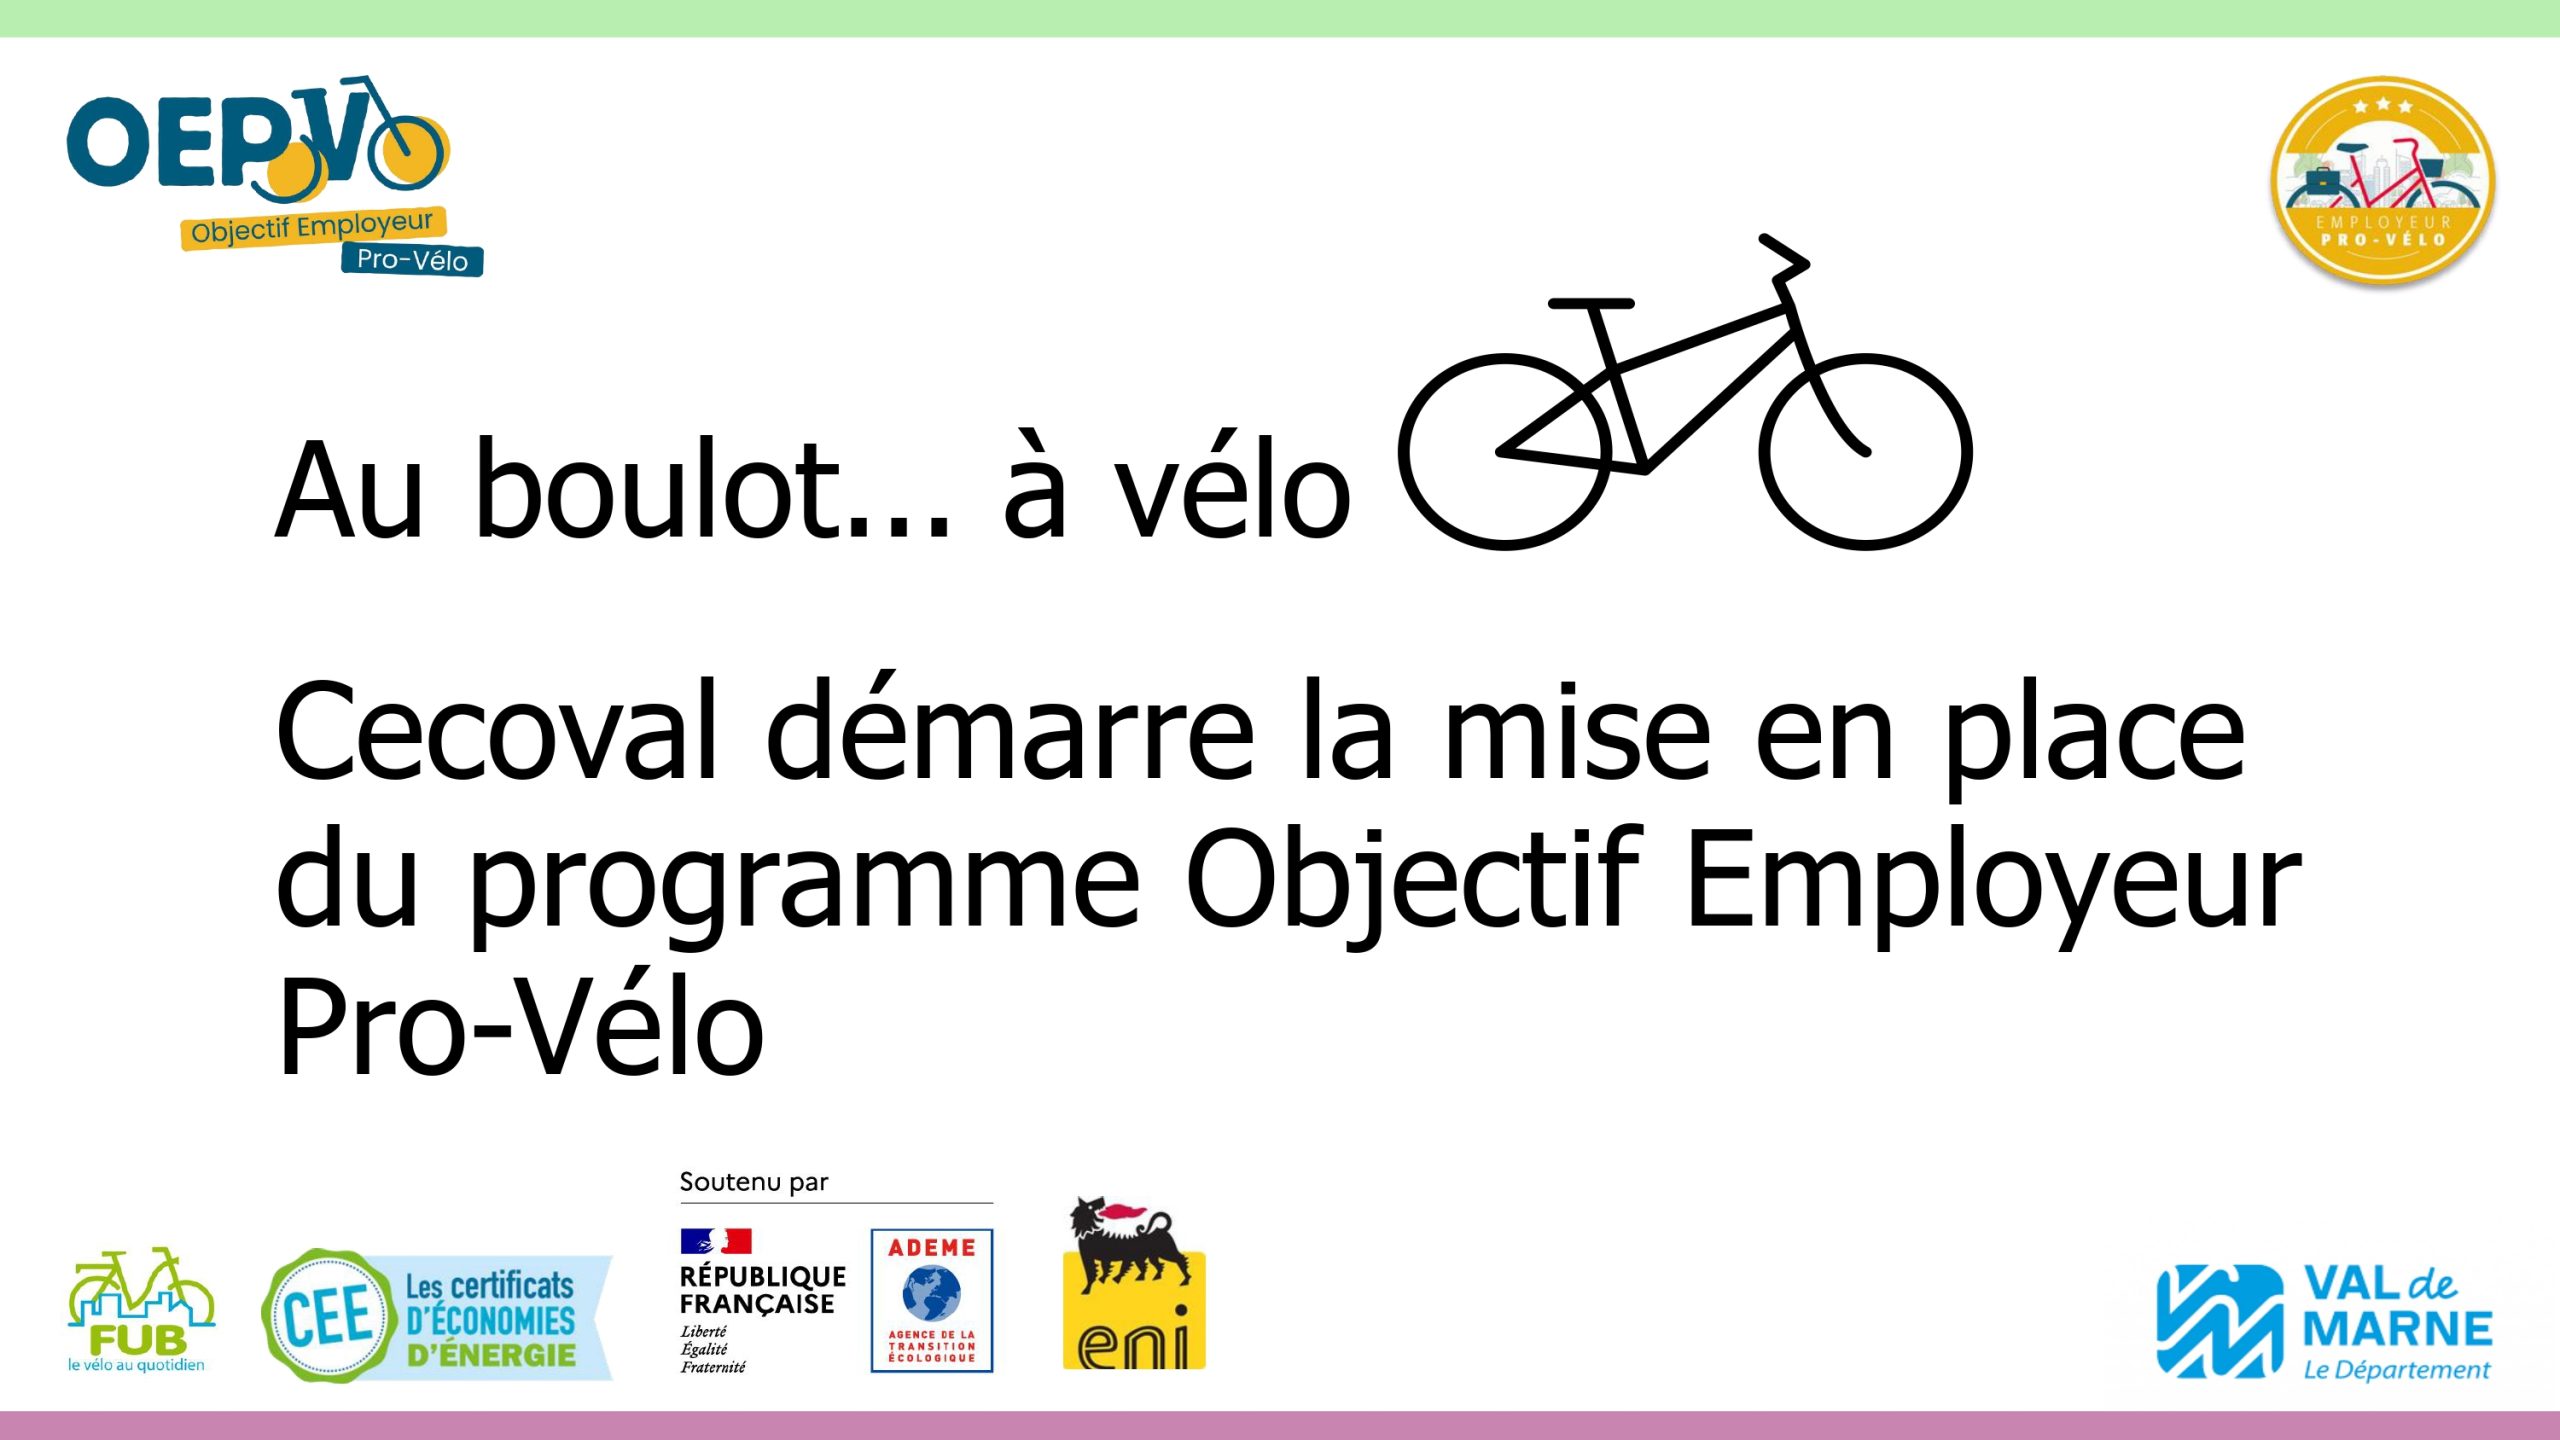 Cecoval démarre le programme de certification Objectif Employeur Pro-Vélo